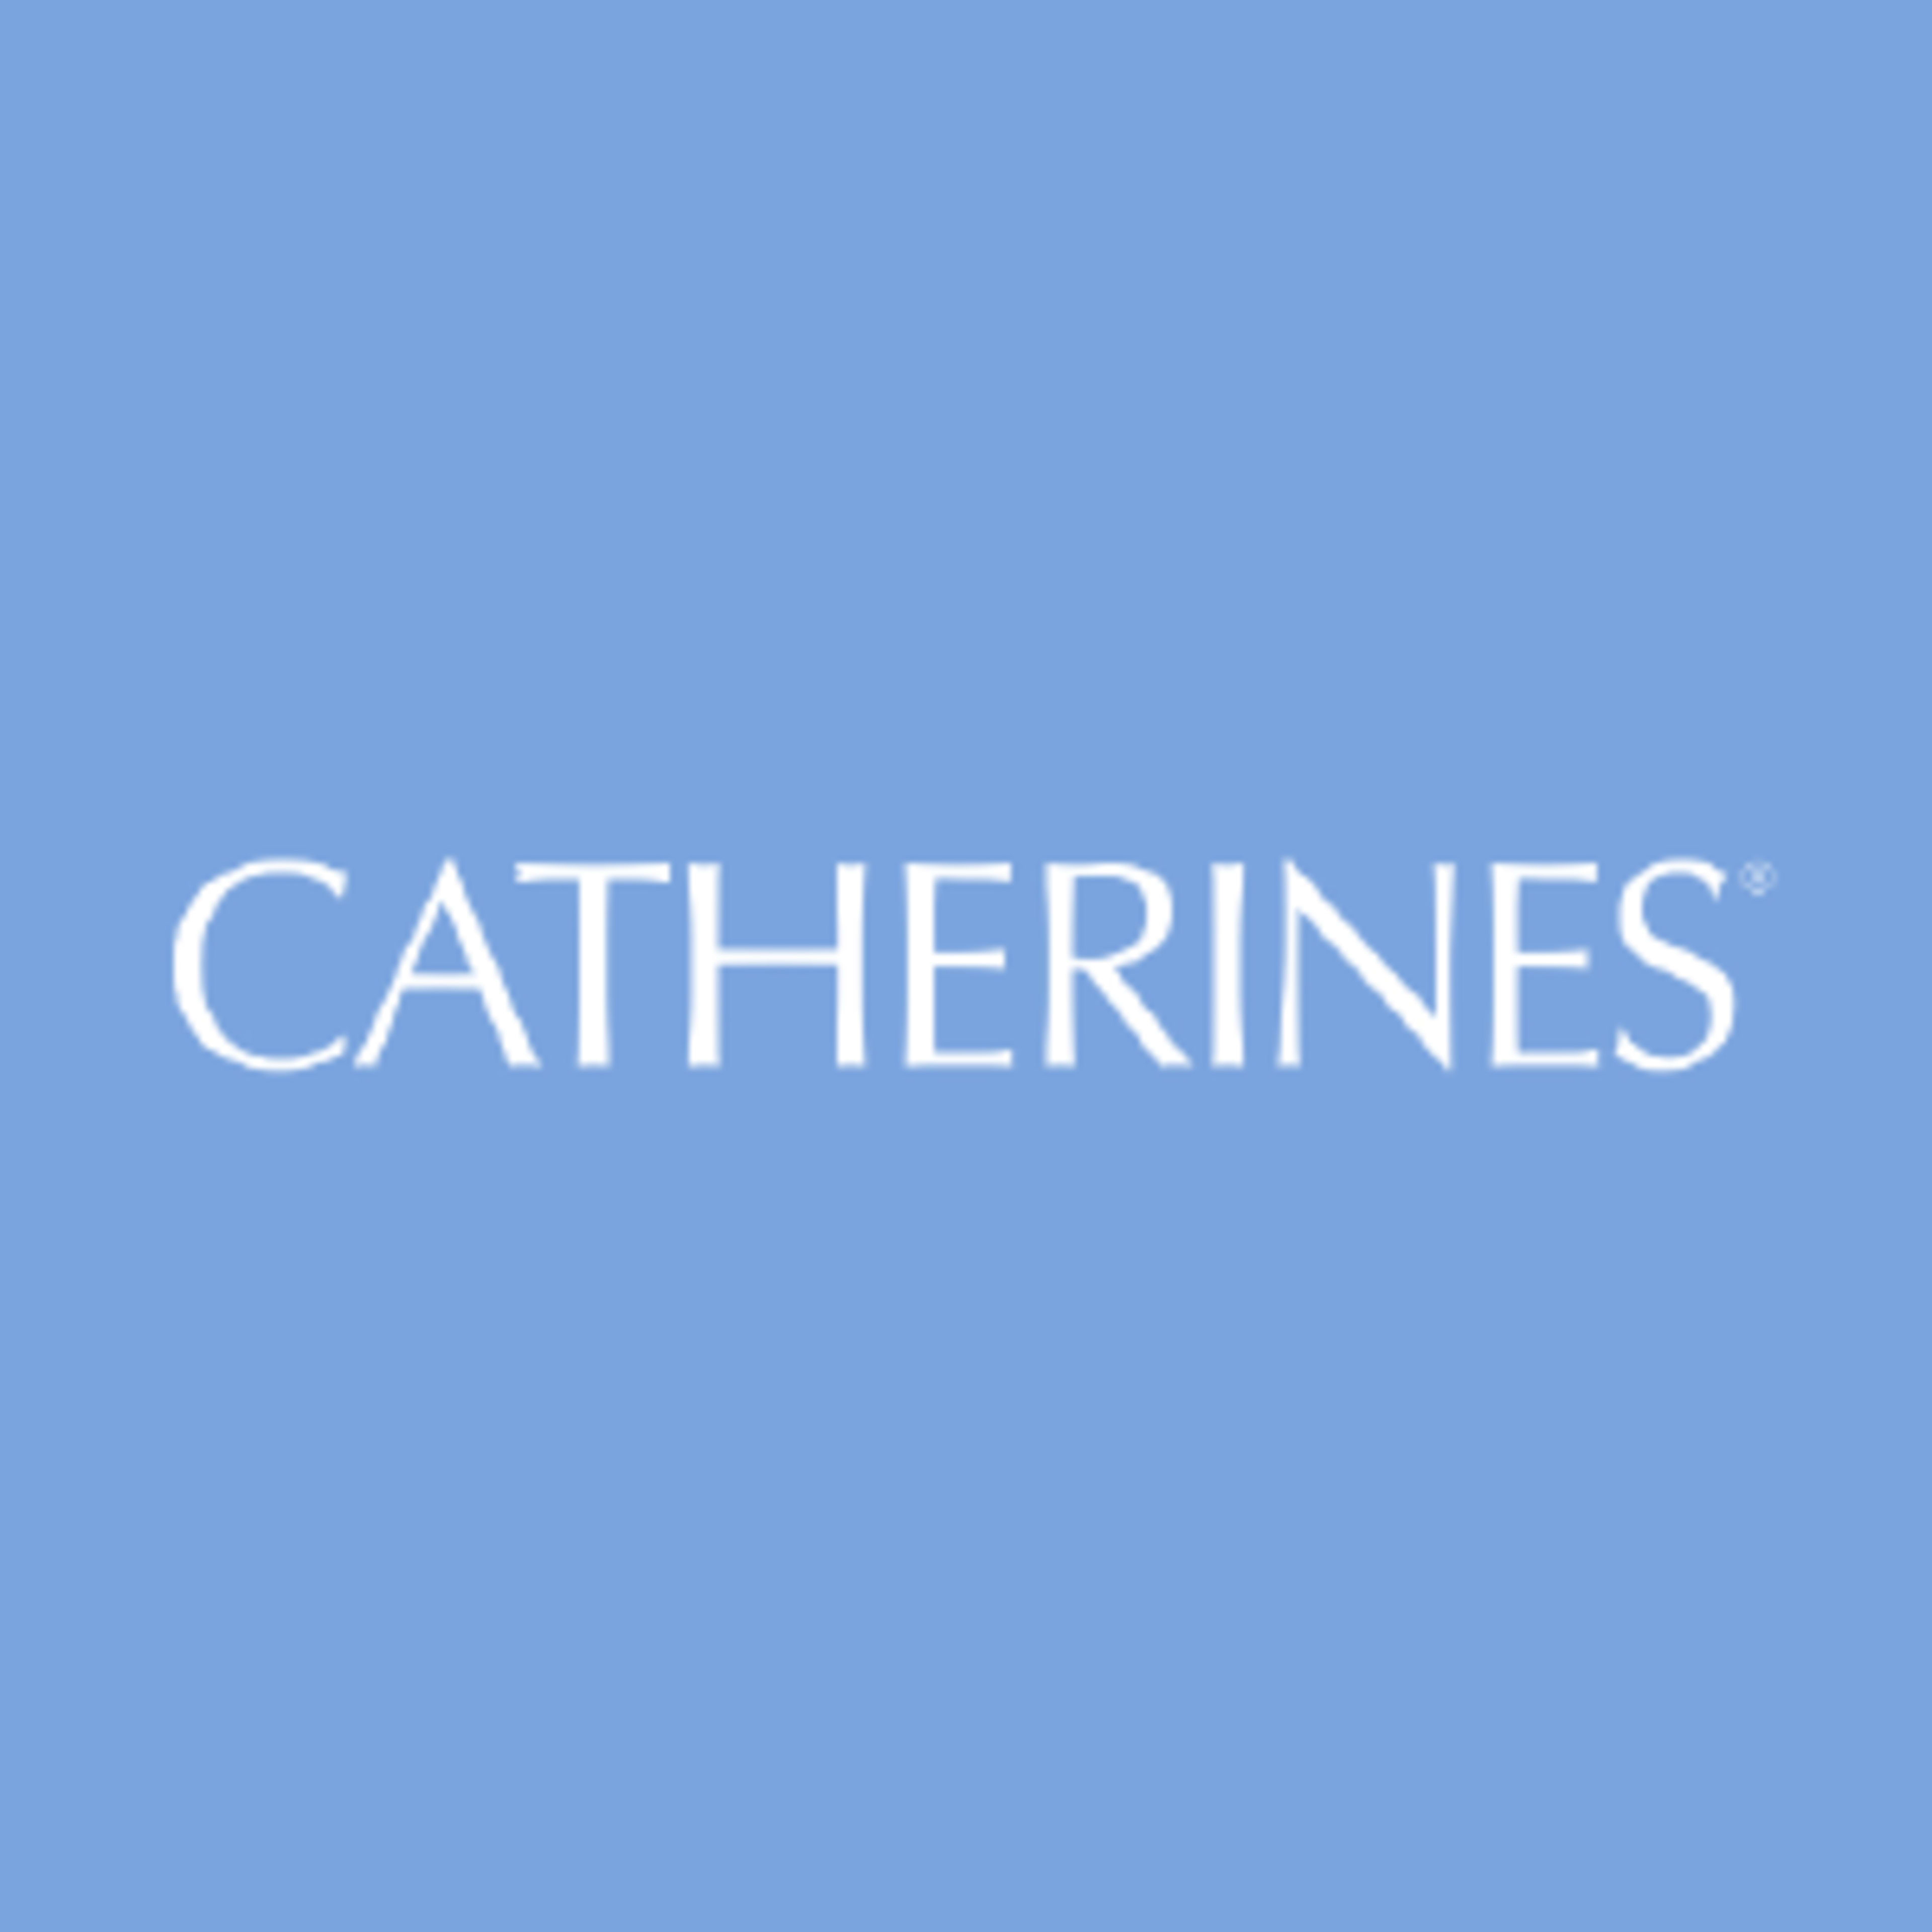 Catherines Code